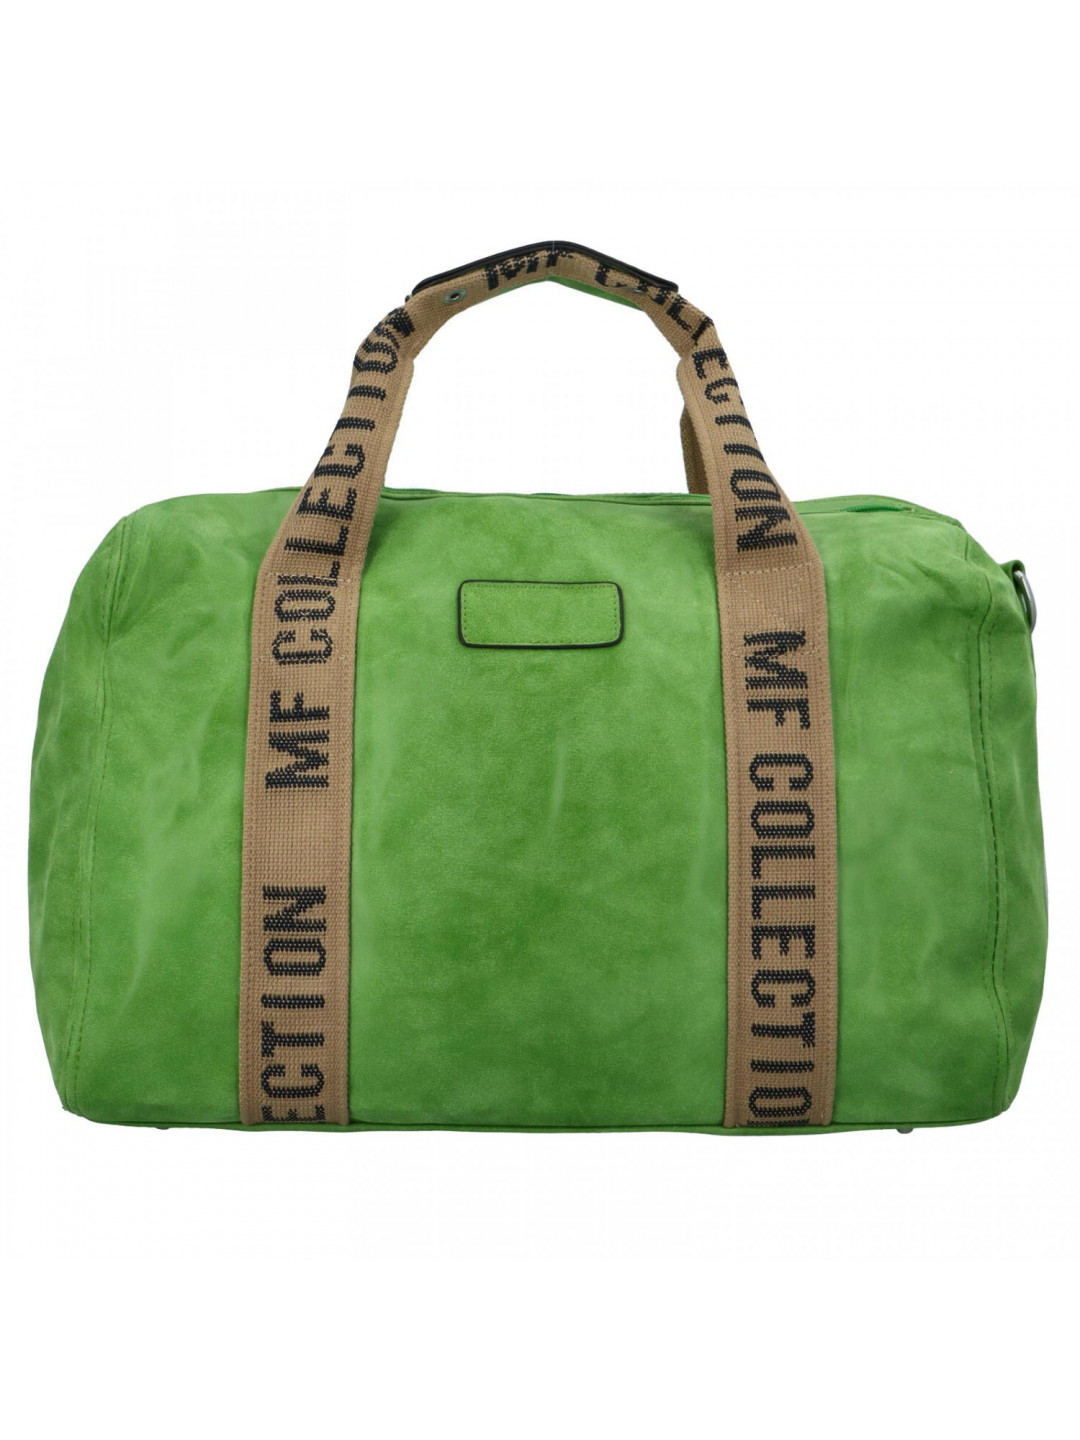 Cestovní dámská koženková kabelka Gita zelená